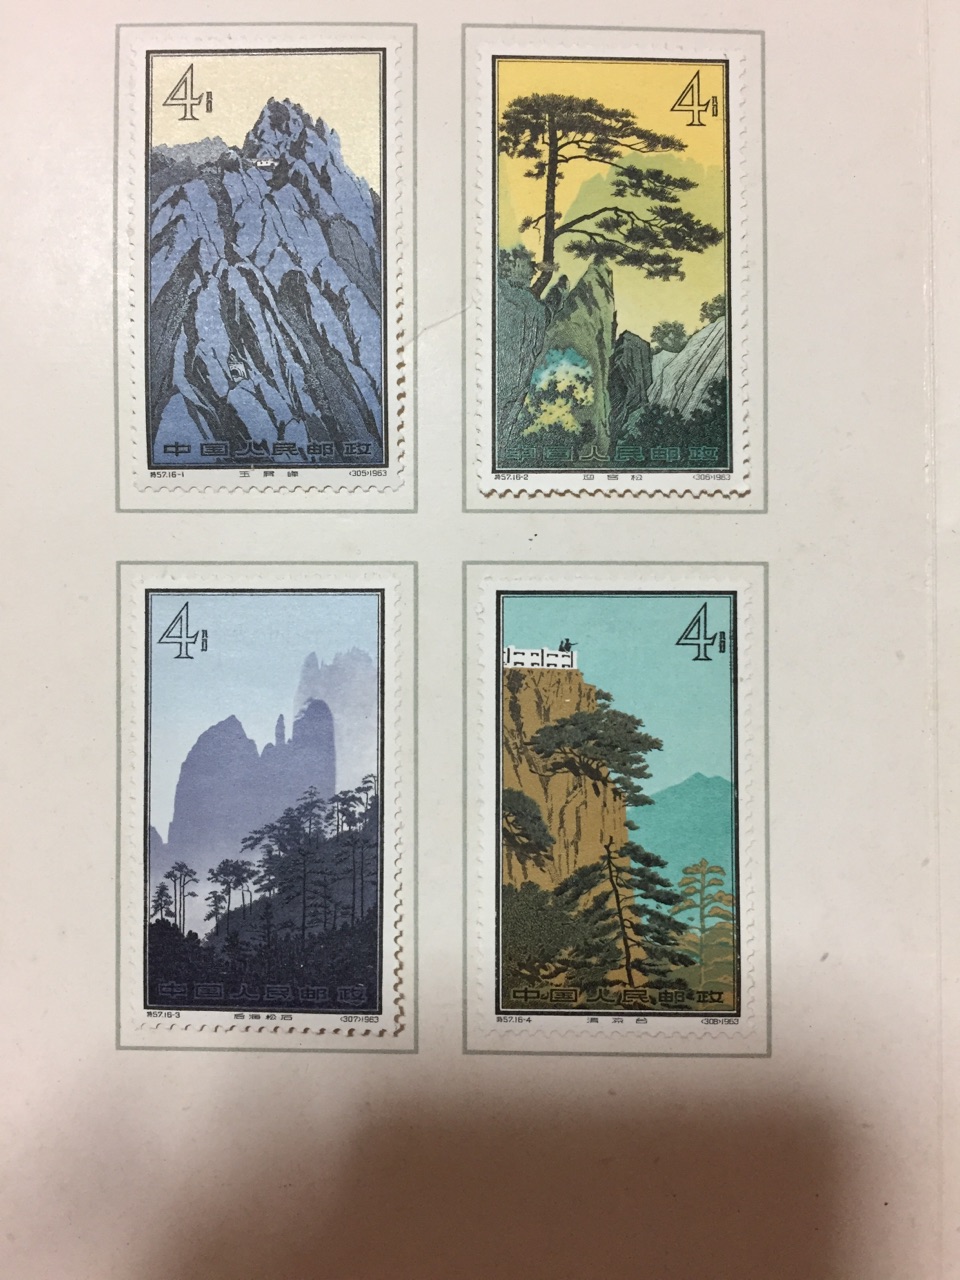 特57黄山风景邮票想问一下价格